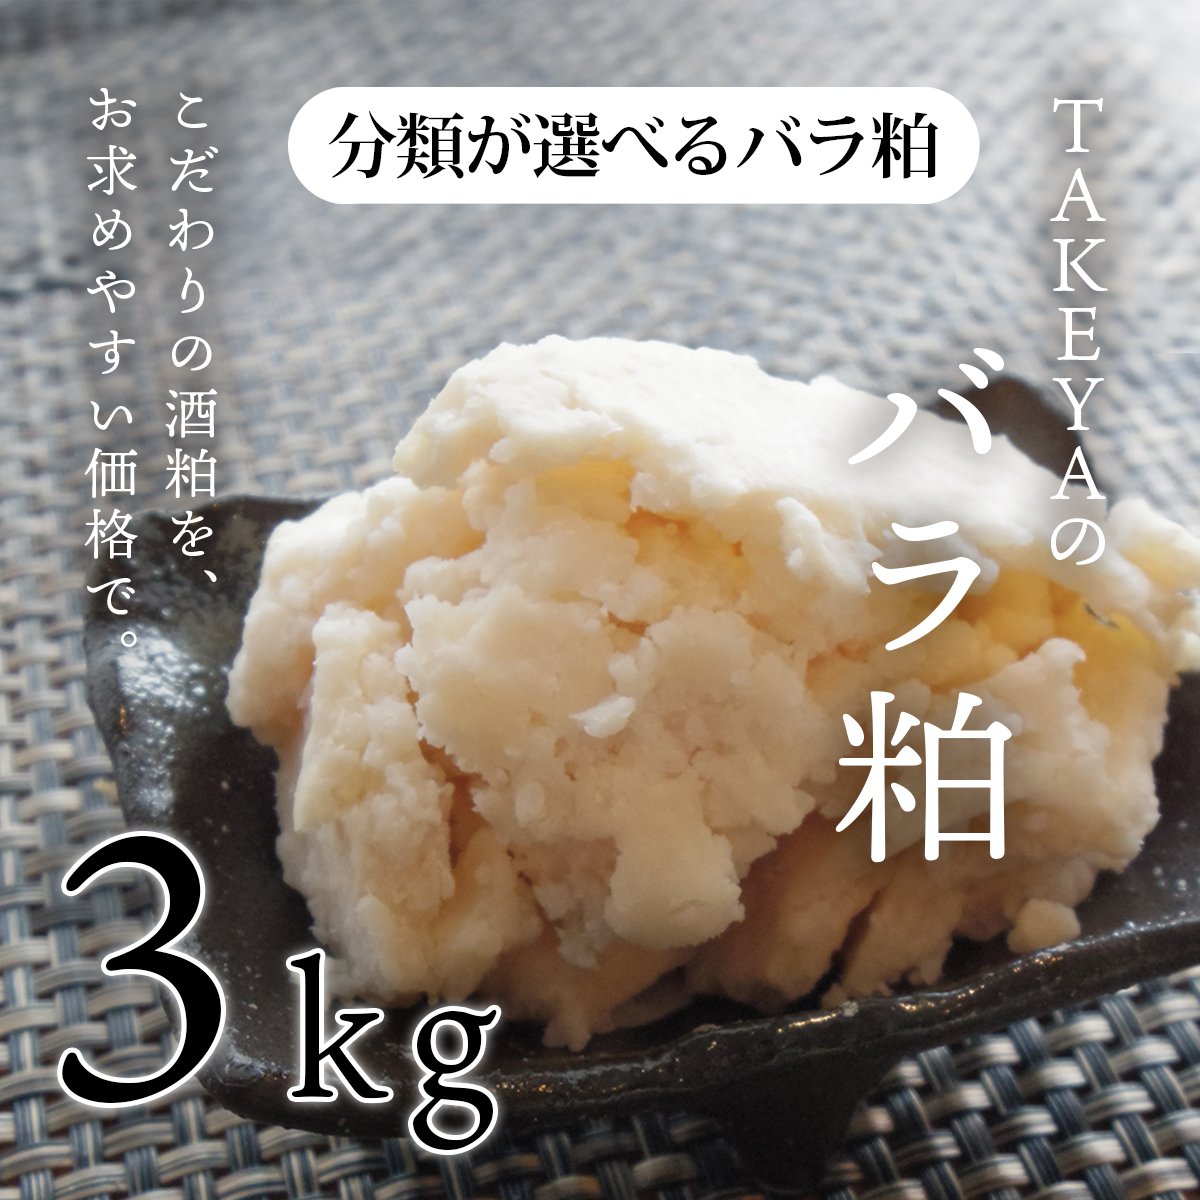 TAKEYAの分類が選べるバラ粕 (極上純米大吟醸から純米まで) 3kg